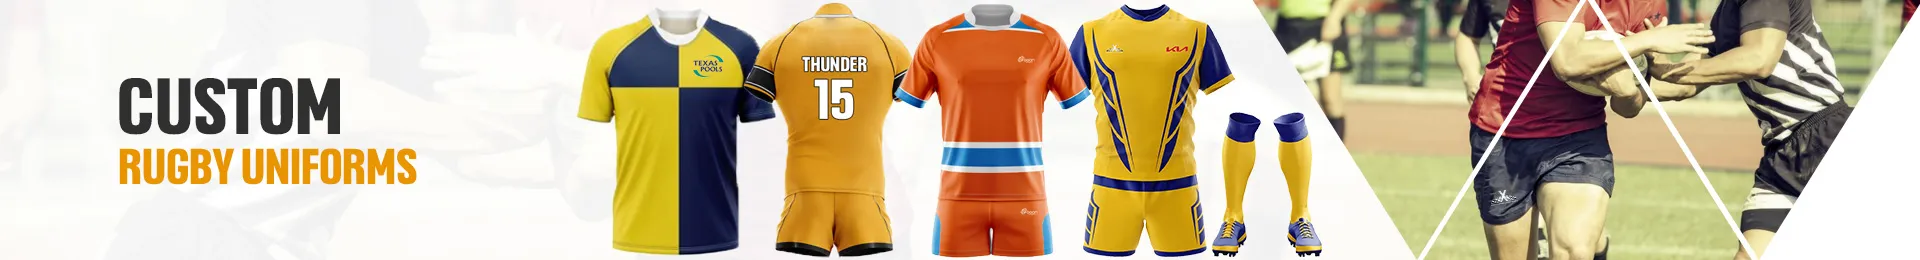 custom-rugby-uniforms